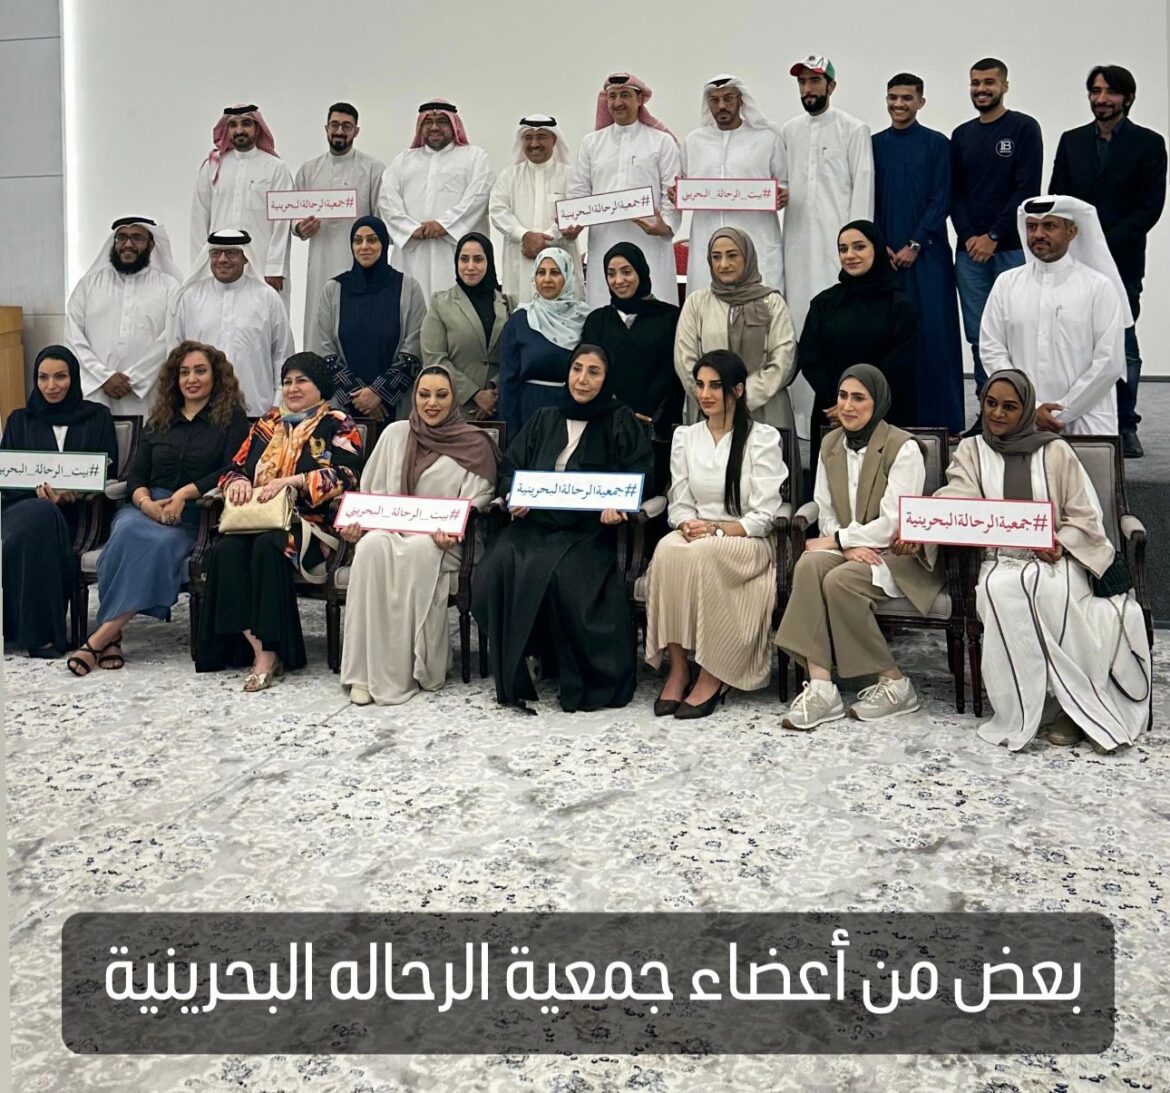 منح الرحال الإماراتي ابراهيم الذهلي العضوية الشرفية لجمعية الرحالة البحرينية